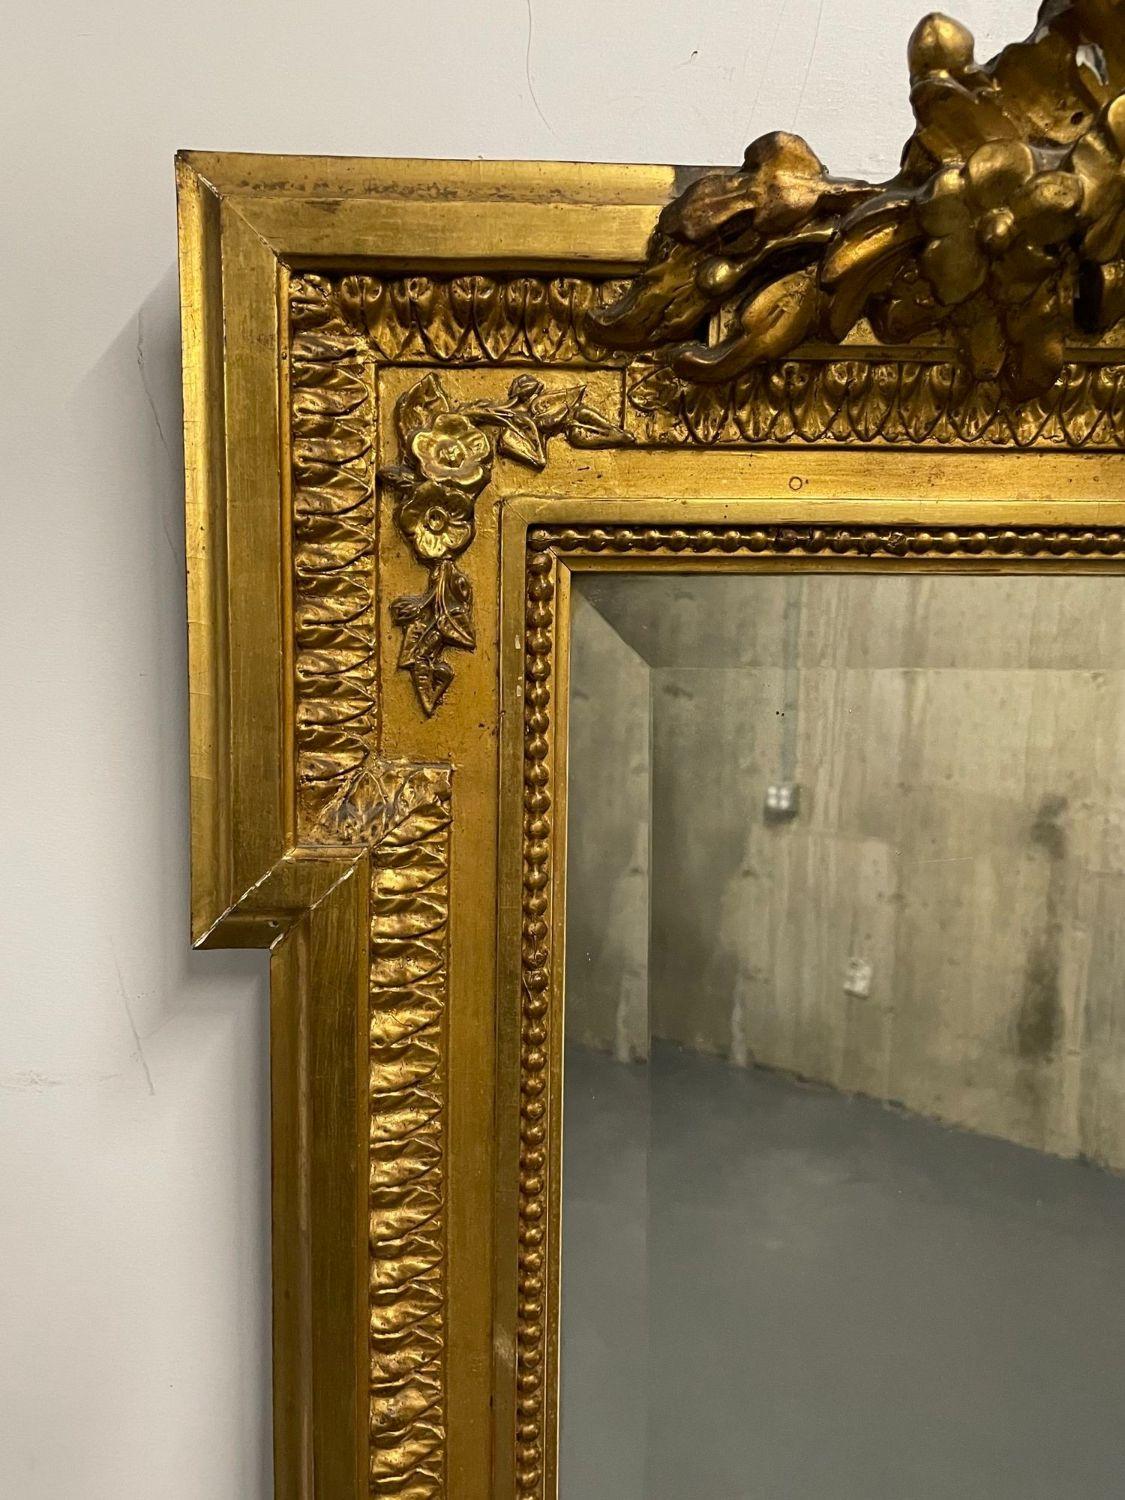 Siglo XIX Giltwood francés Pared, consola, espejo de muelle, Tallado.

Espejo biselado finamente tallado y detallado. De mediados a finales del siglo XIX con un marco rectangular tallado a bala que conduce a un frontón ornamentado tallado en forma